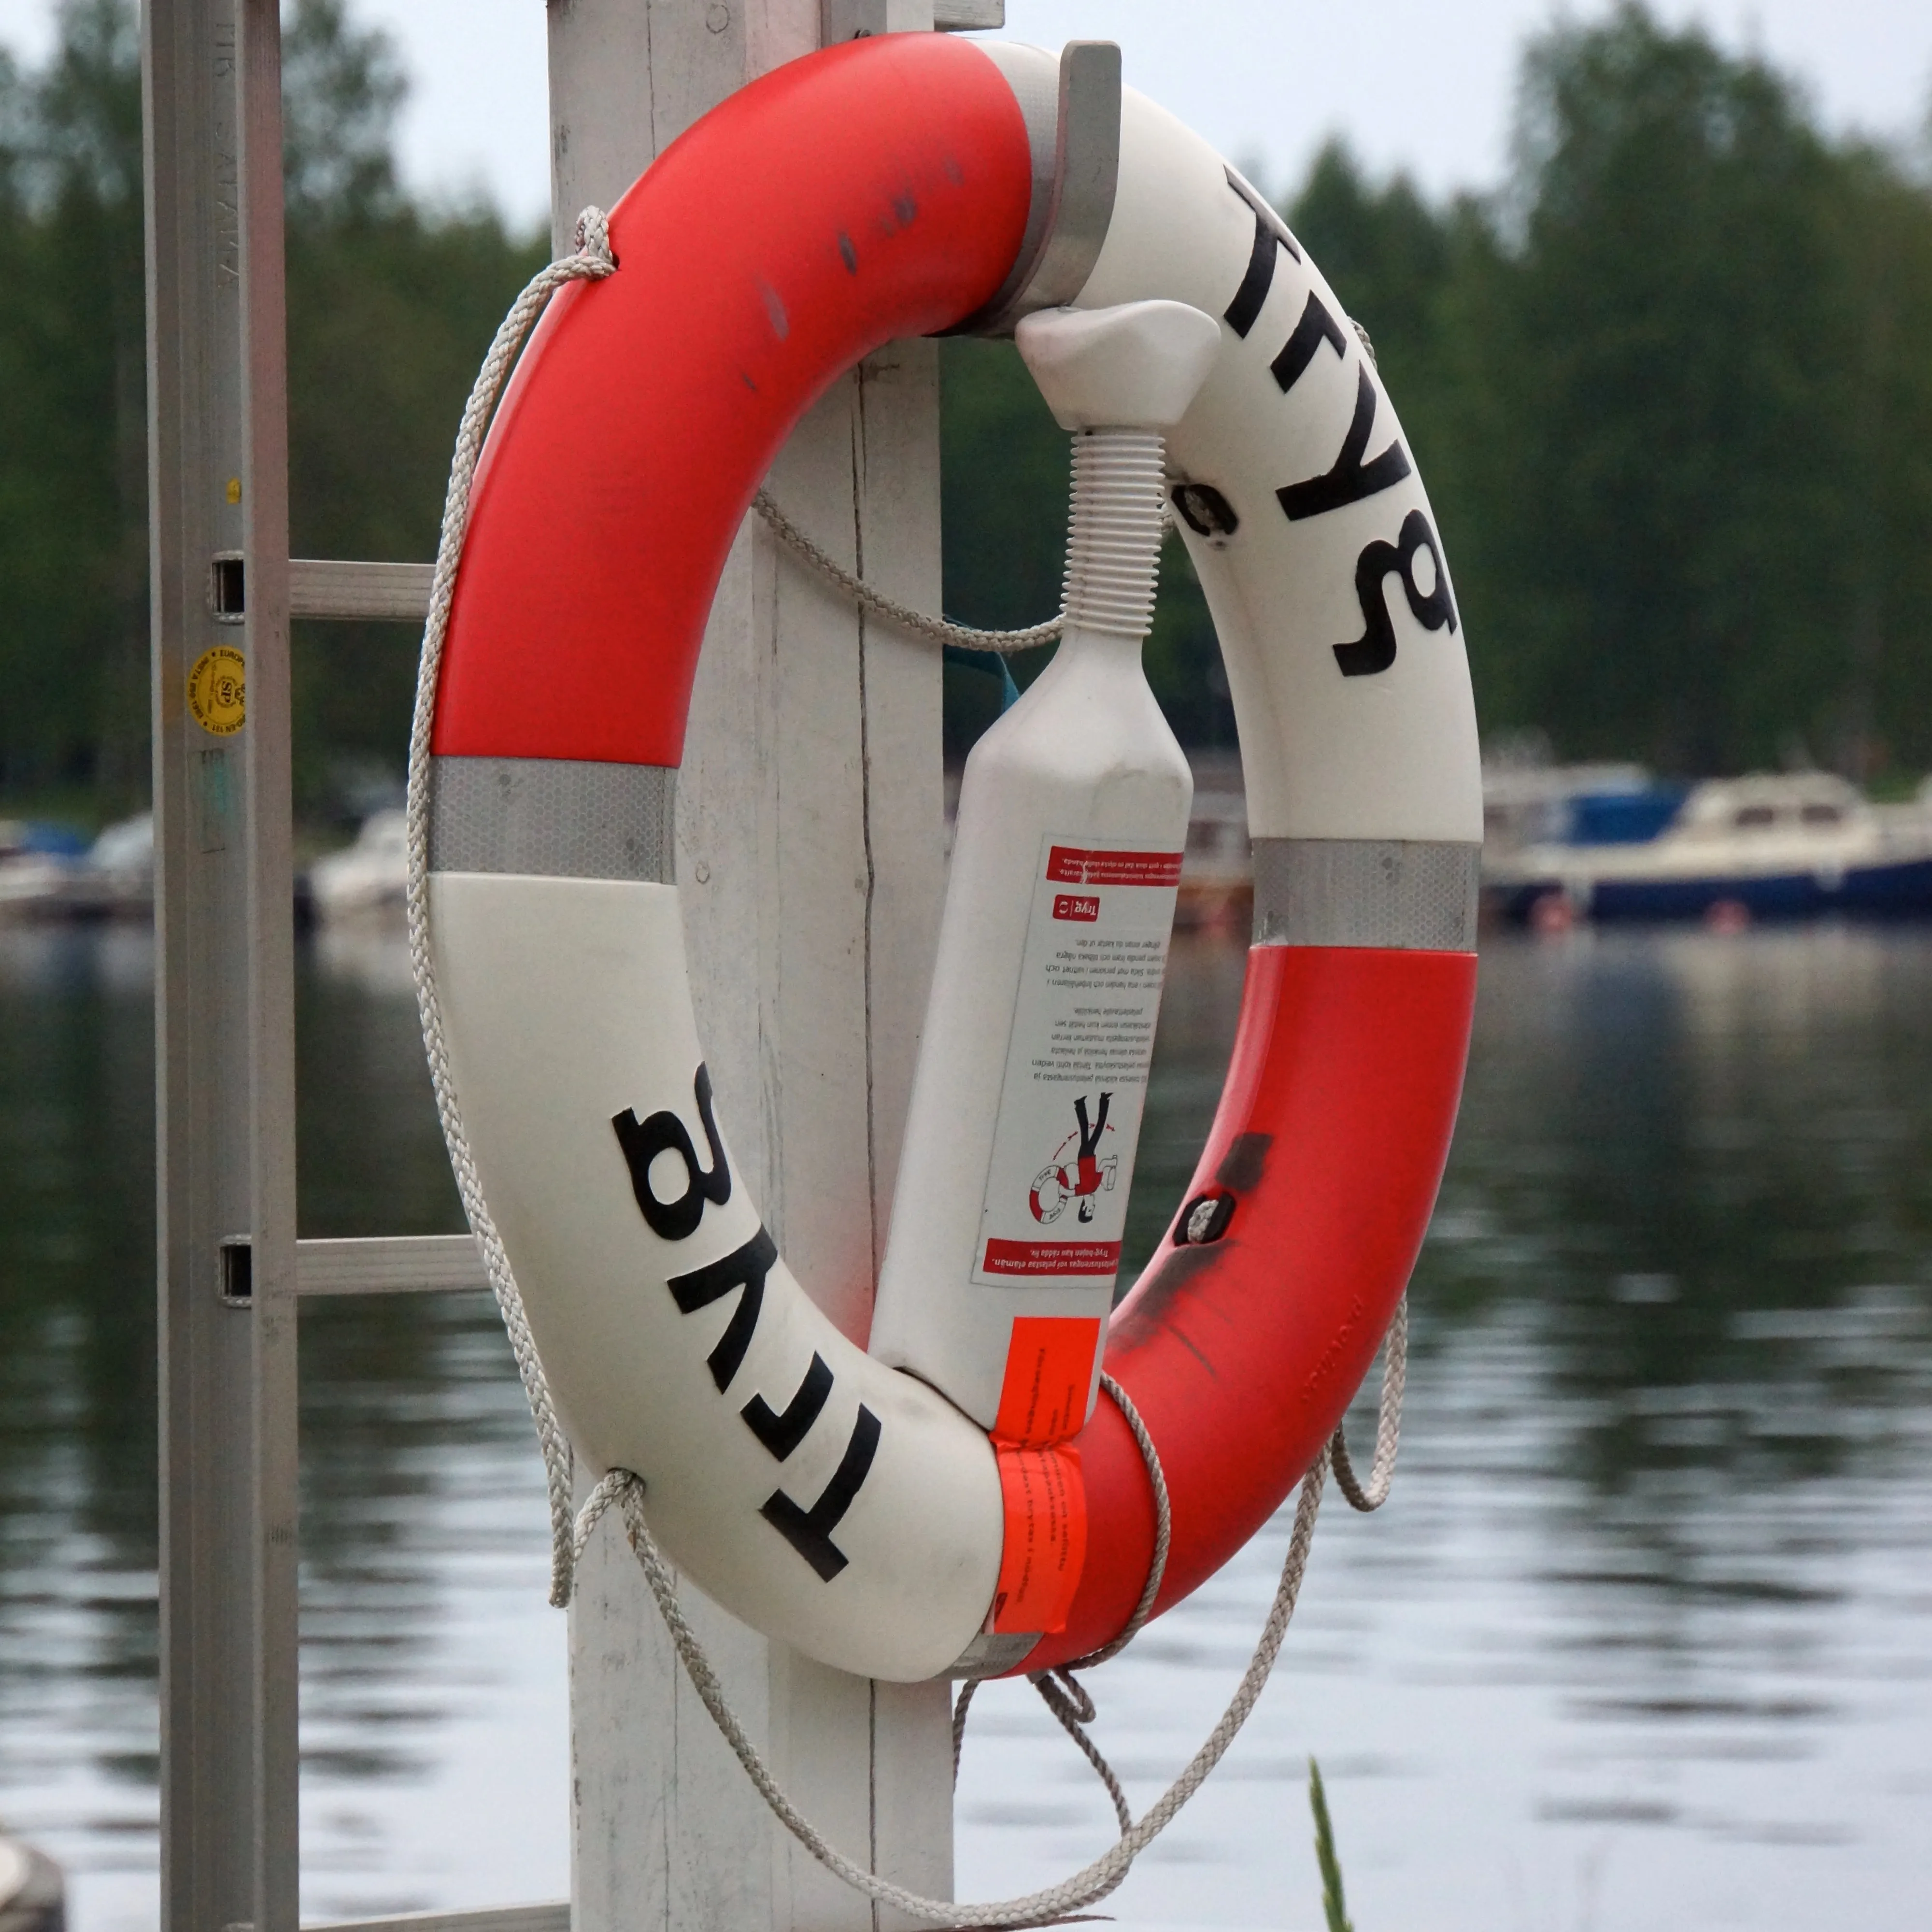 Спасательный круг на лодке. Спасательный круг на катере. Буй спасательный надувной. Спасательный круг на яхте.